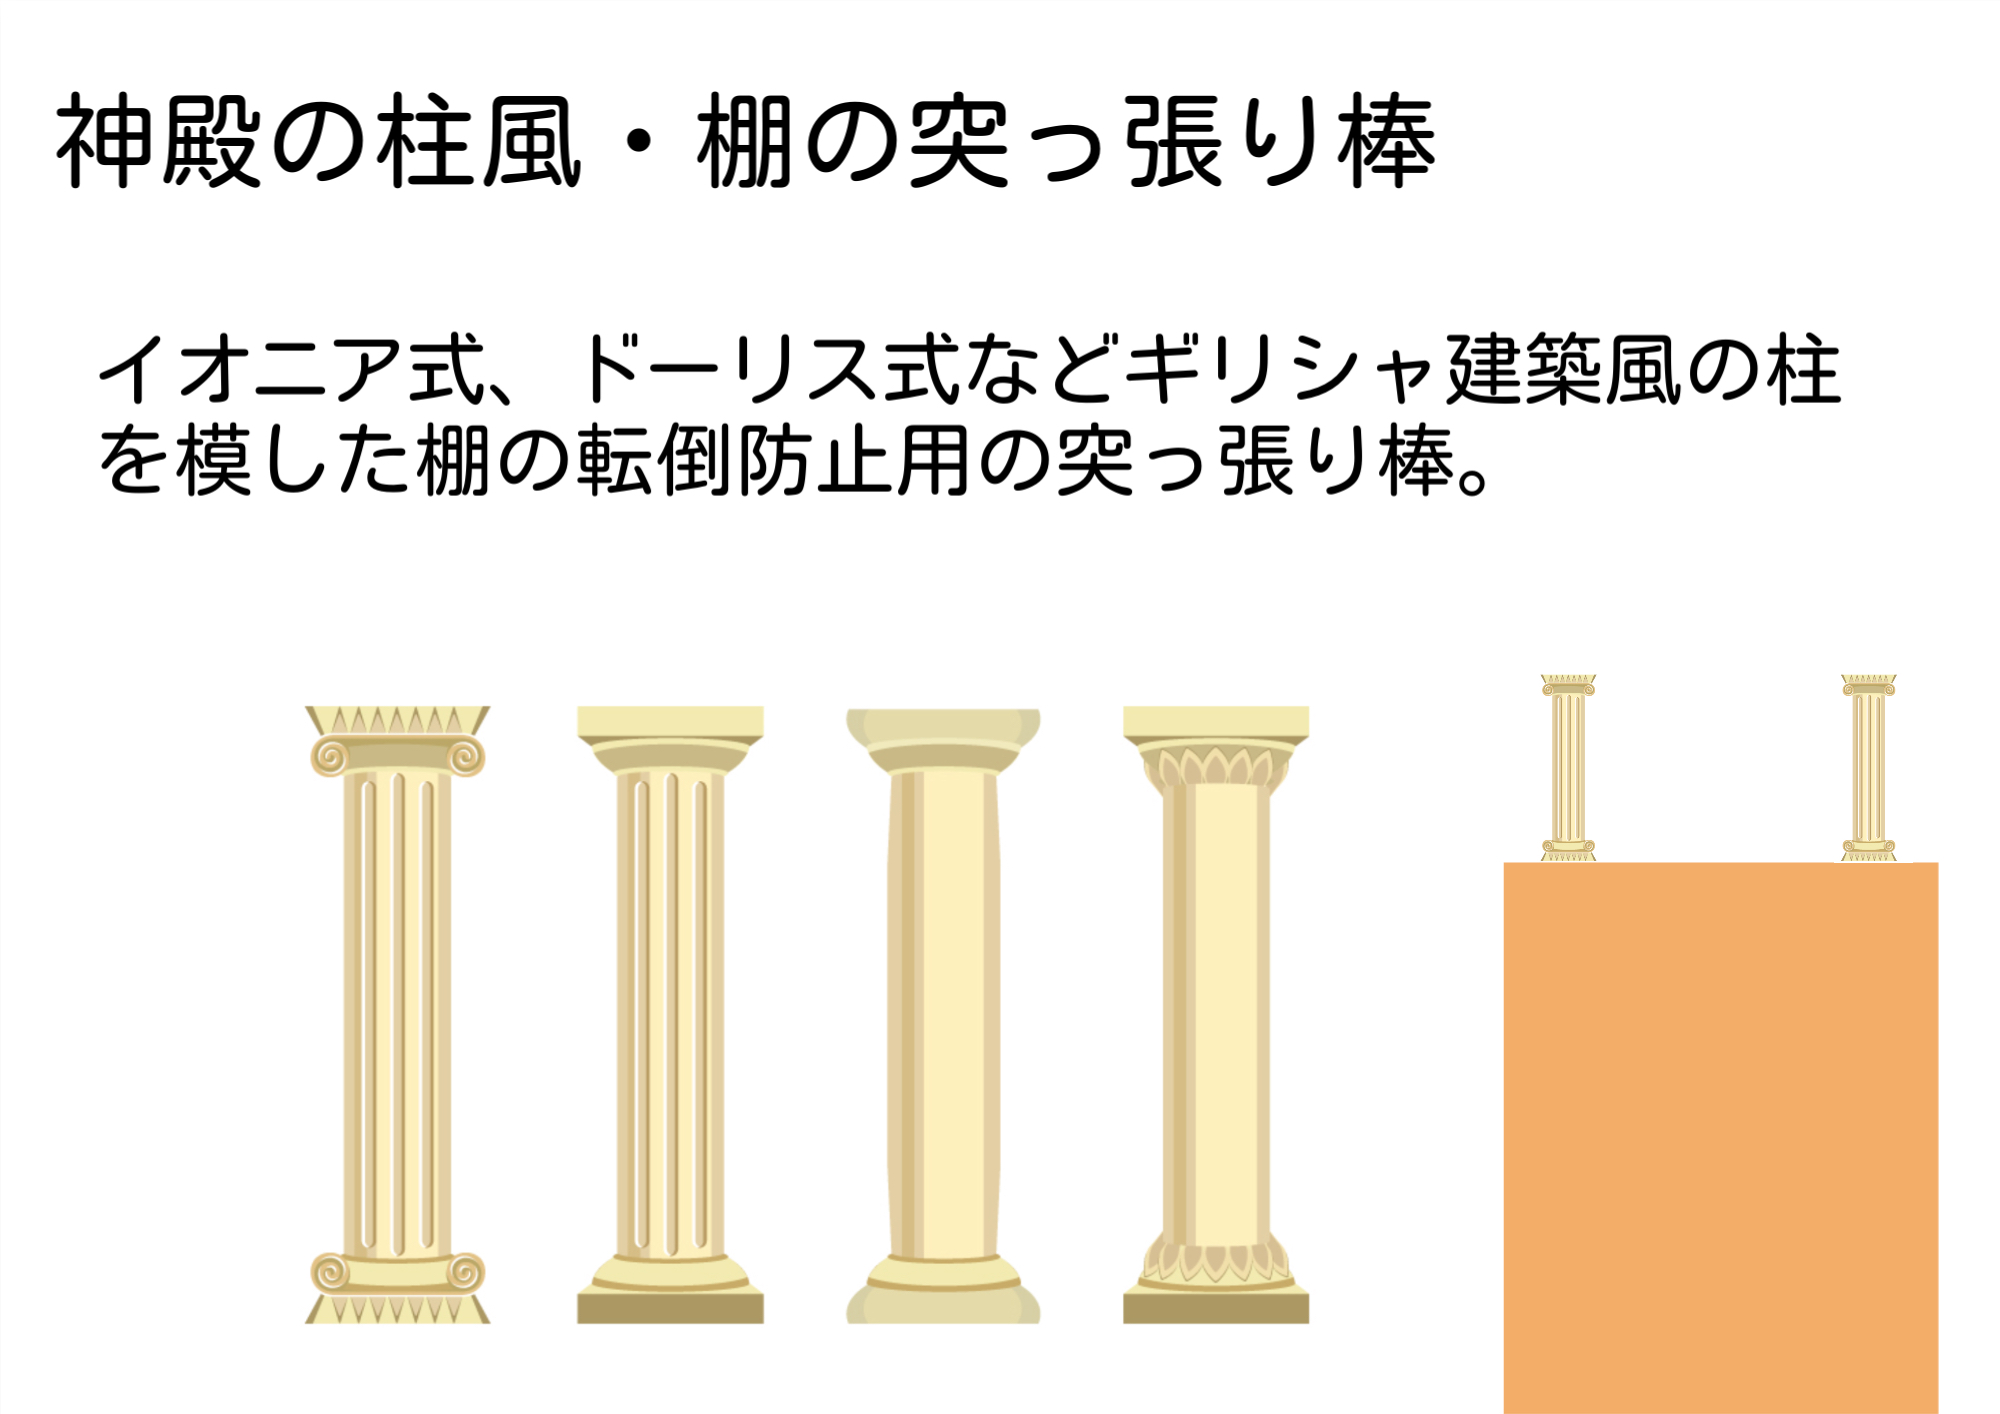 神殿の柱風突っ張り棒